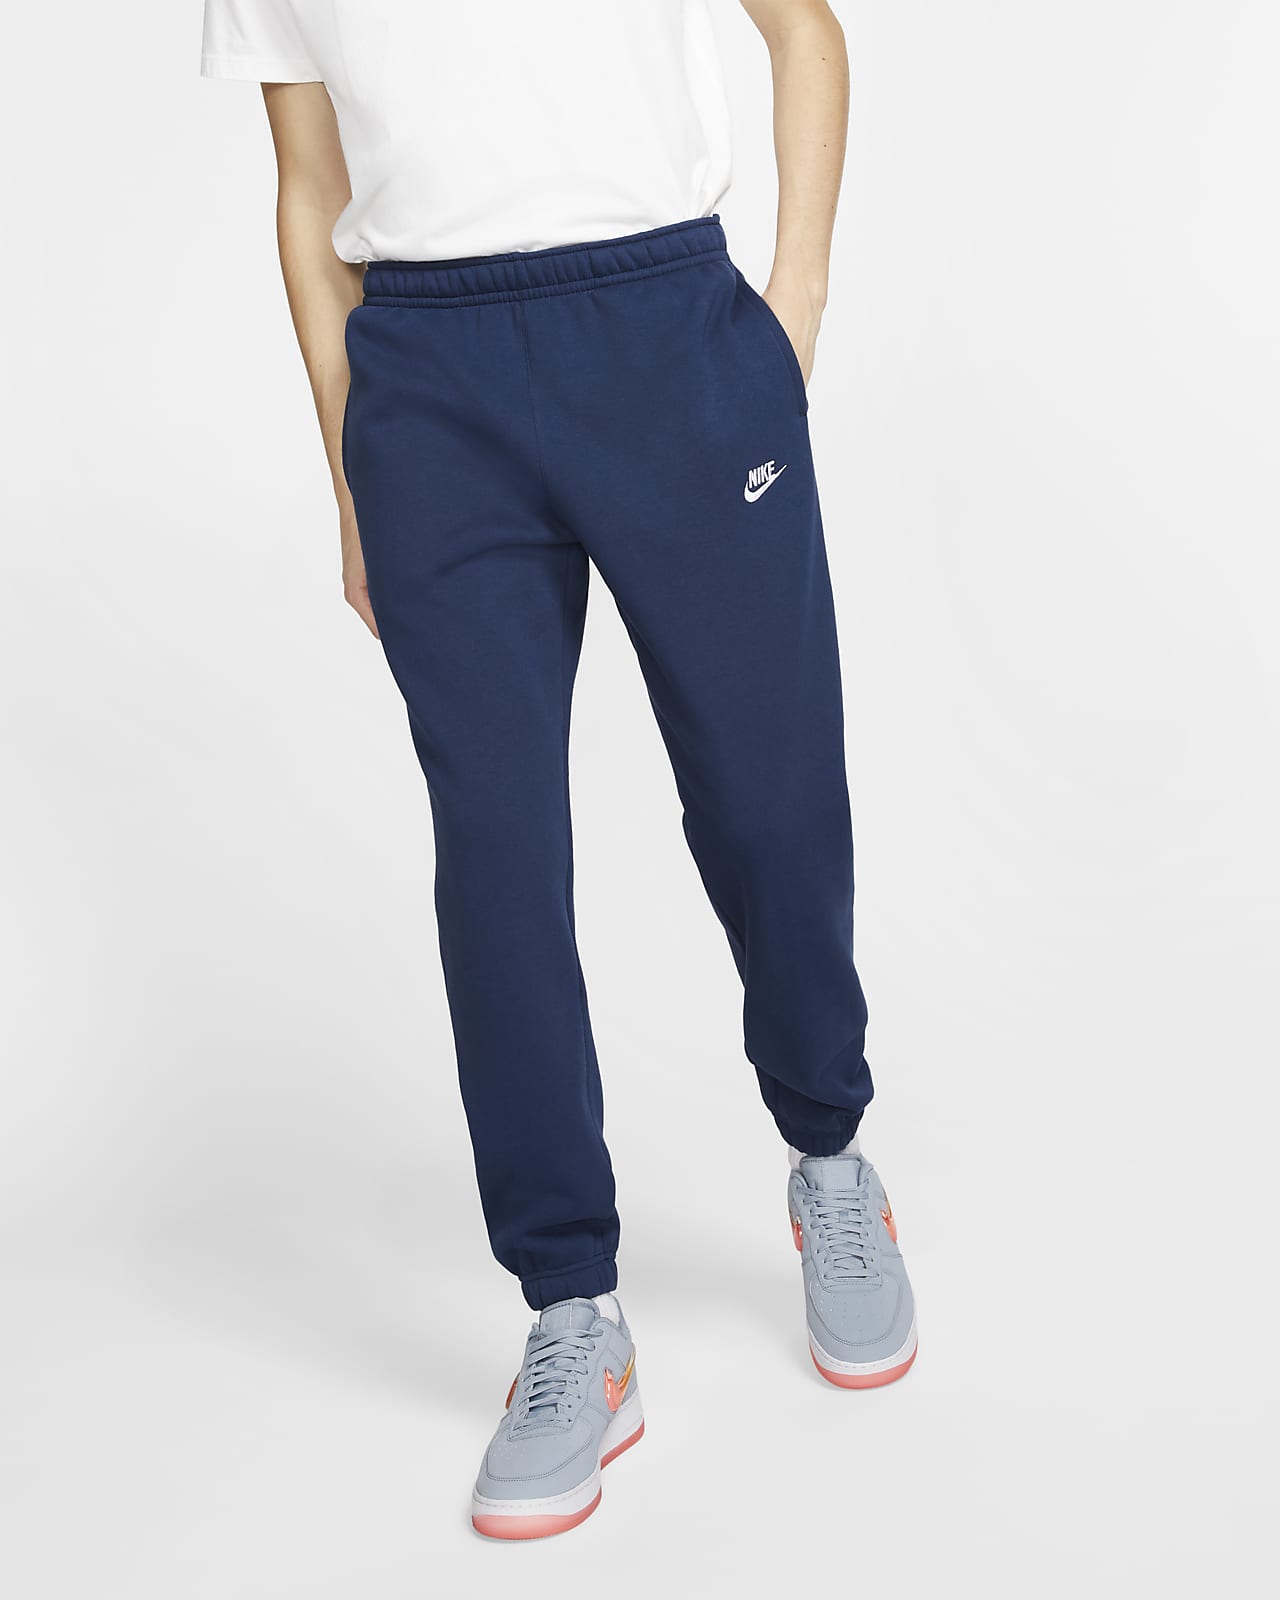 Hommes Meilleures ventes Pantalons de survêtement et joggers. Nike LU